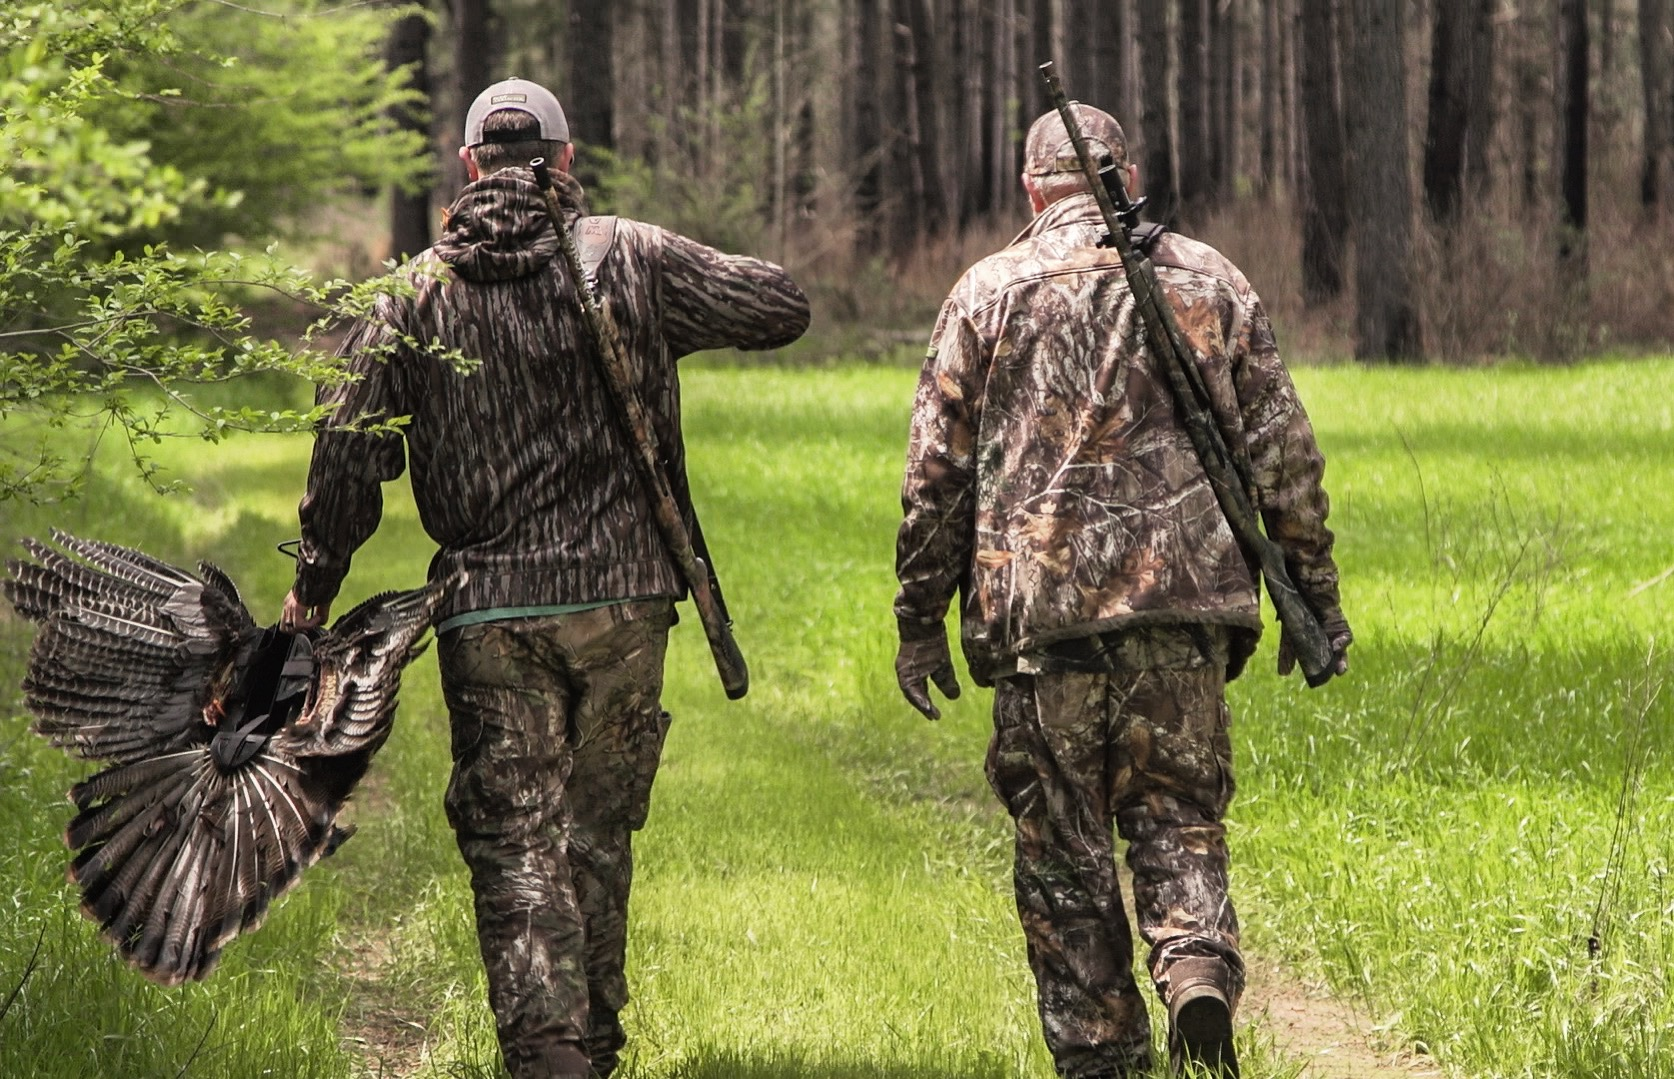 Bagging Birds - The 5 Best Turkey Hunting Loads for Shotguns.